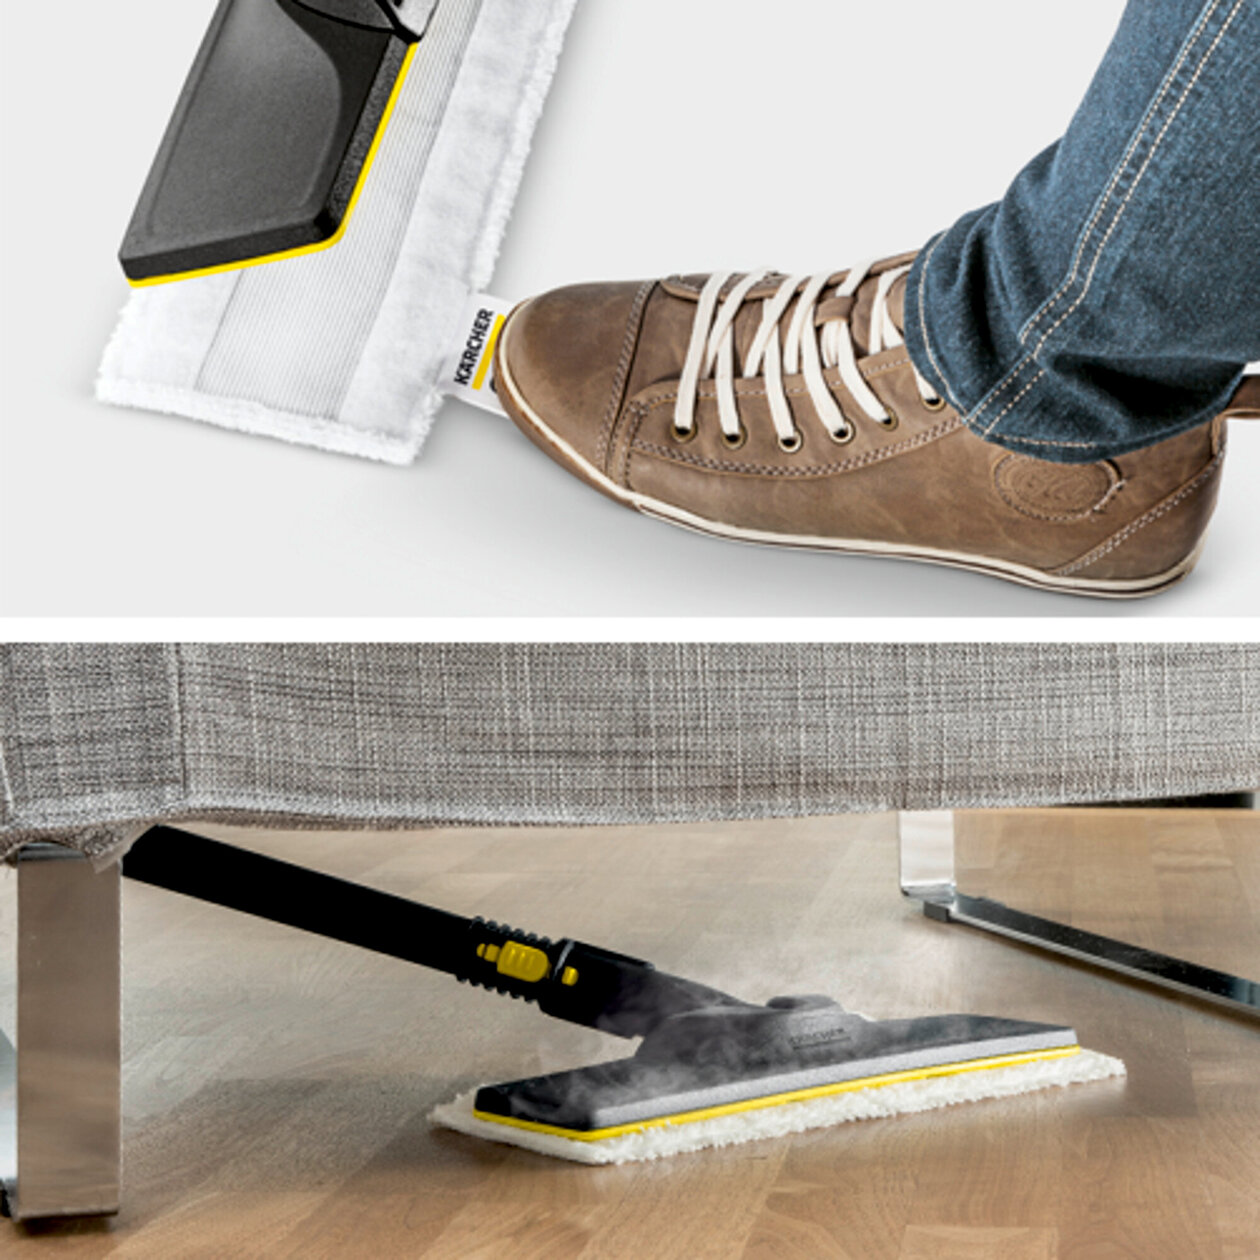  Parný čistič SC 4 EasyFix: Súprava na čistenie podlahy EasyFix s flexibilným kĺbom na podlahovej hubici a pohodlným suchým zipsom na upevnenie utierky na podlahu